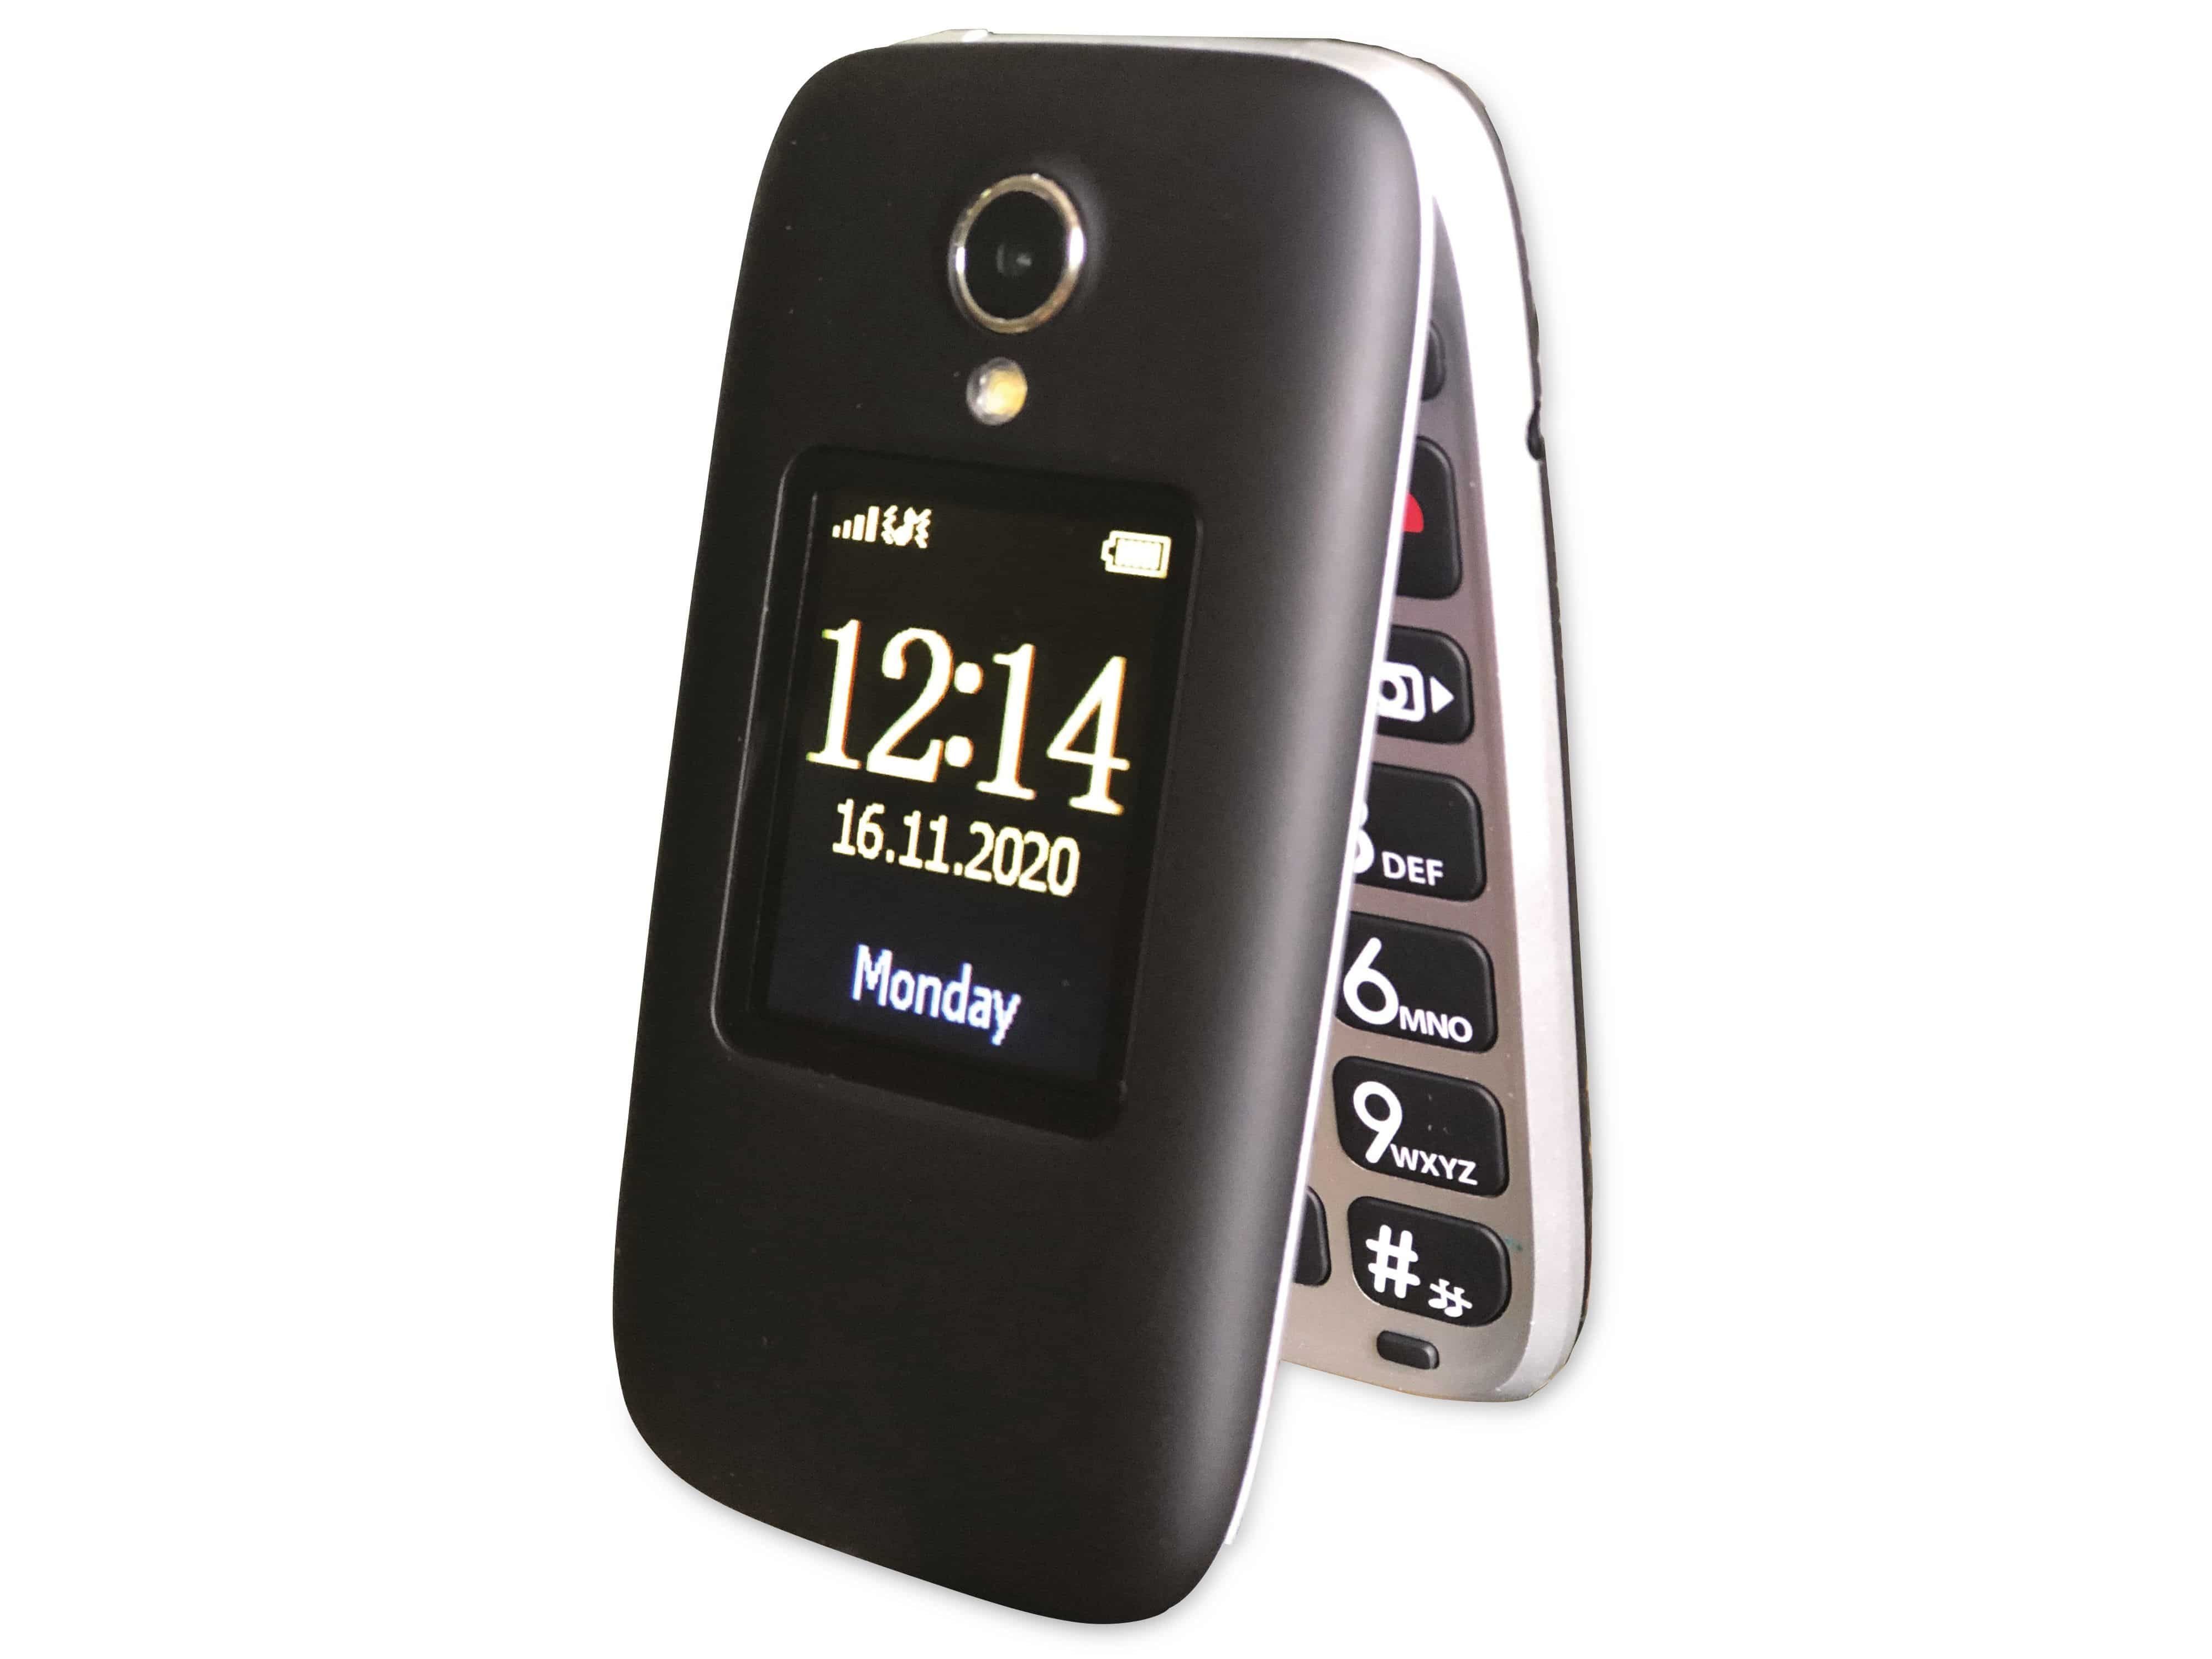 TELEFUNKEN S560, Telefunken Handy schwarz Handy